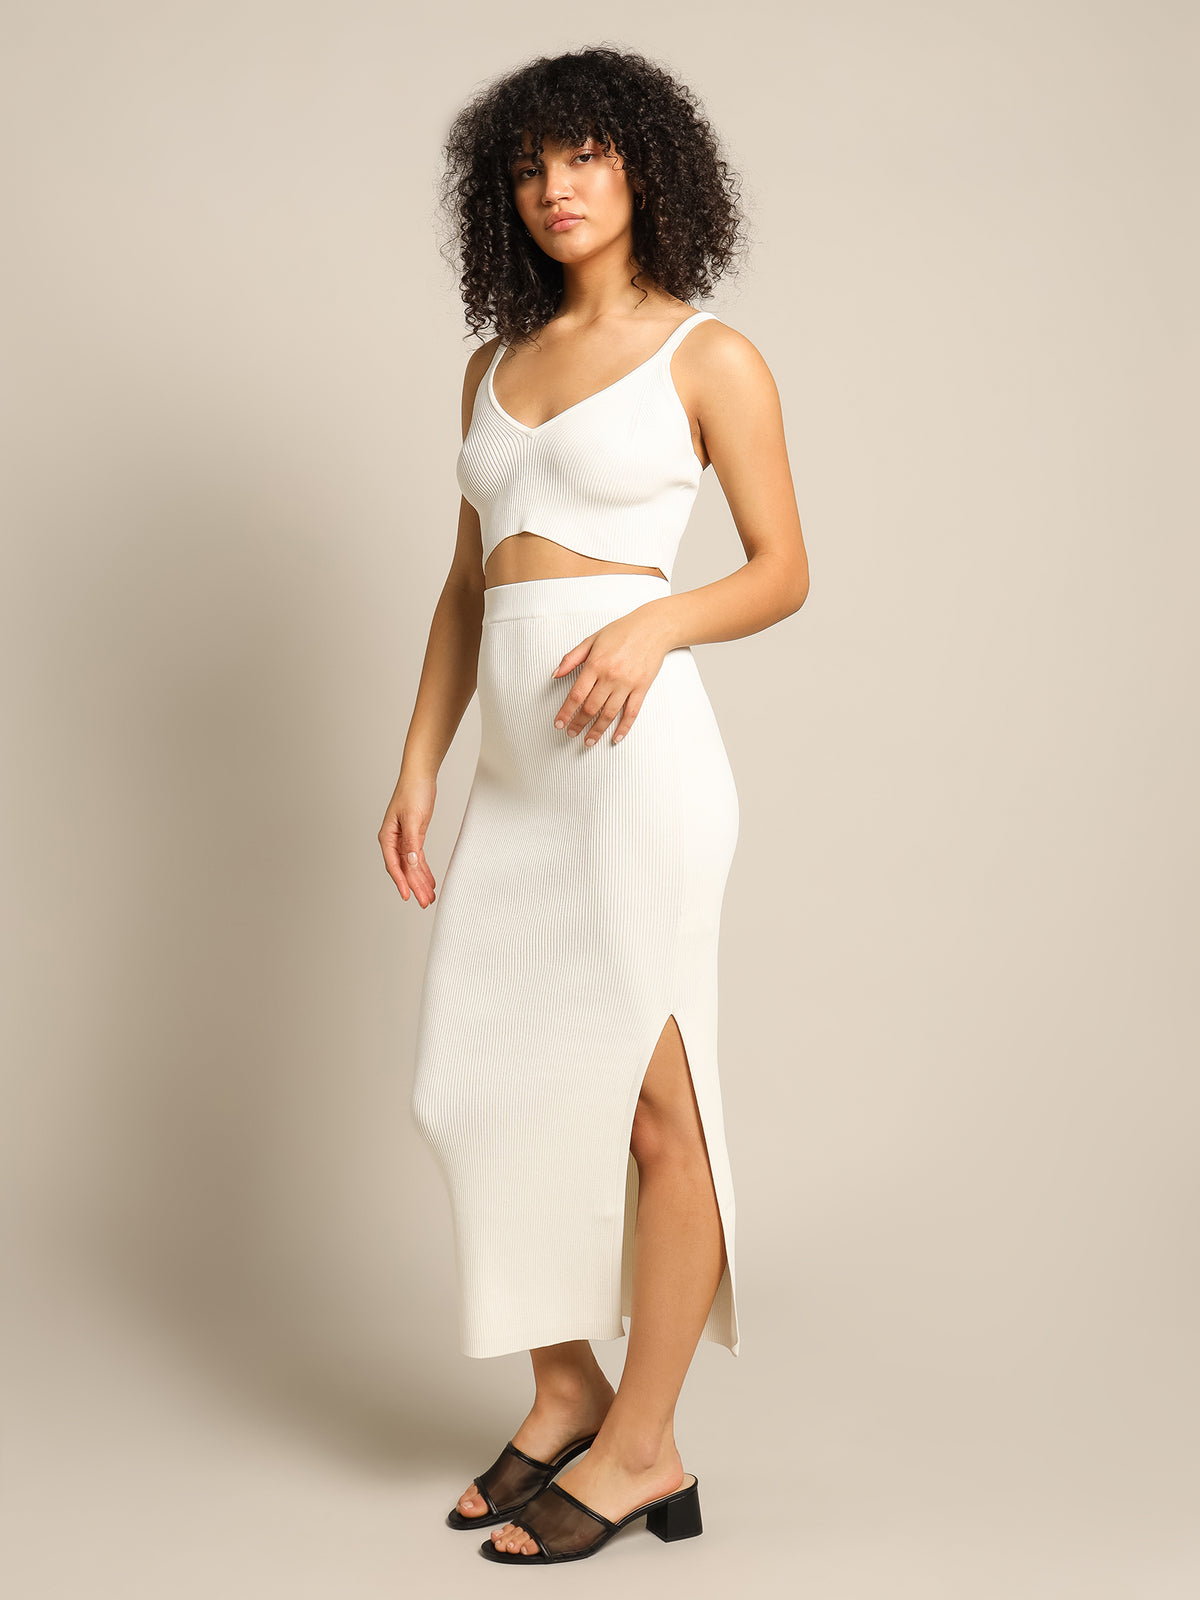 Freya Knit Skirt in Off White